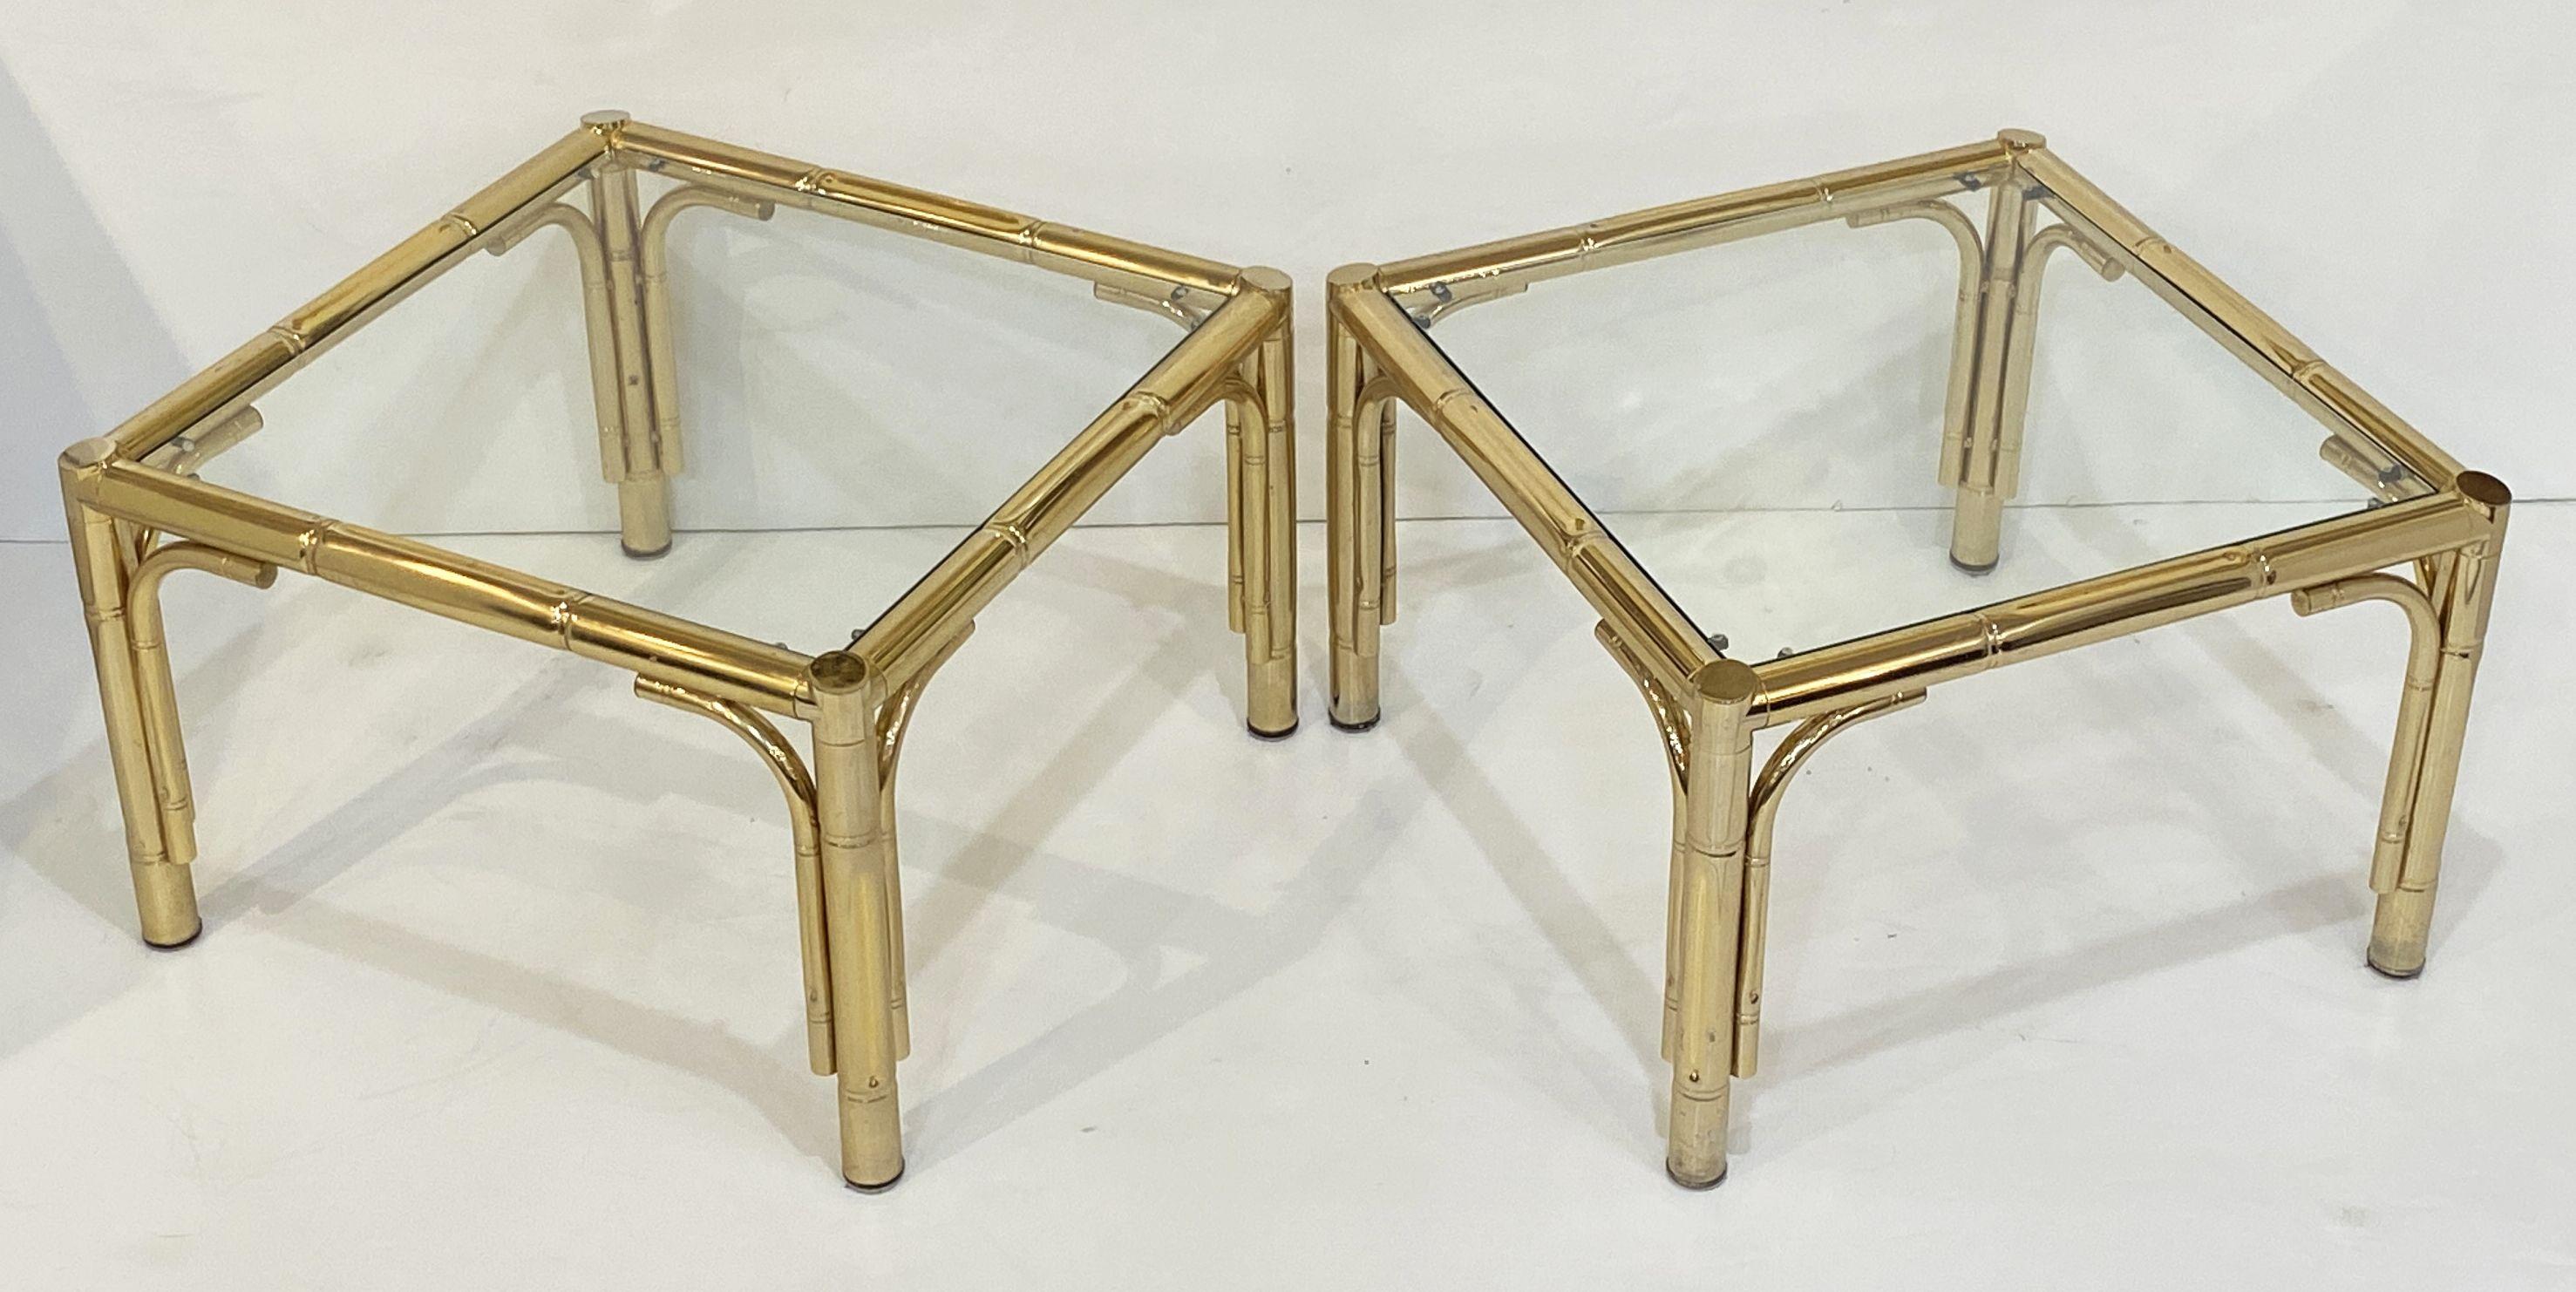 Ein feines Paar französischer quadratischer Vintage-Tische aus Messing mit einem hübschen Bambusimitat an den Rahmen - jeder Tisch hat eine Glasplatte über vier Beinen.

Perfekt für die Verwendung als Beistell- oder Endtische oder zusammen als